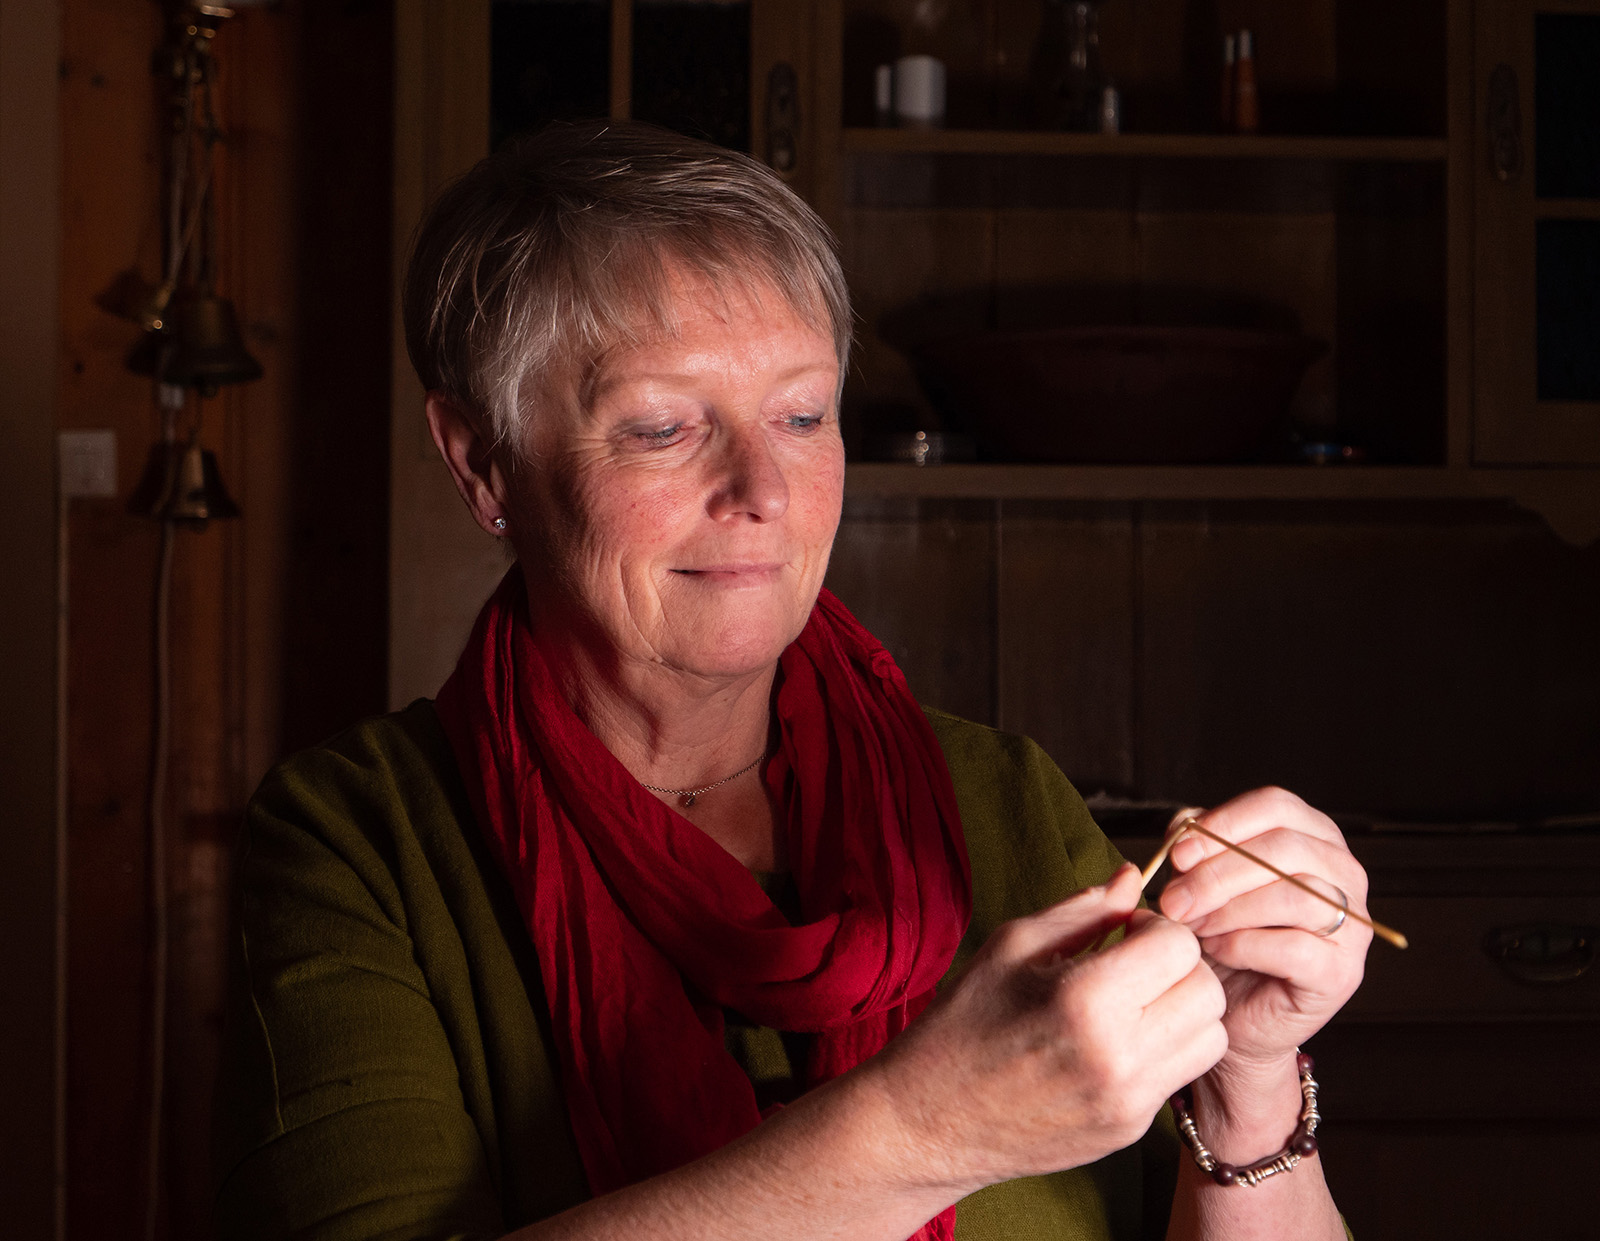 Tradisjonshåndverker Mari Bryhni i arbeid med halmsløyd, et bærekraftig og gammelt håndverk. Foto: Nilsson Cinematics